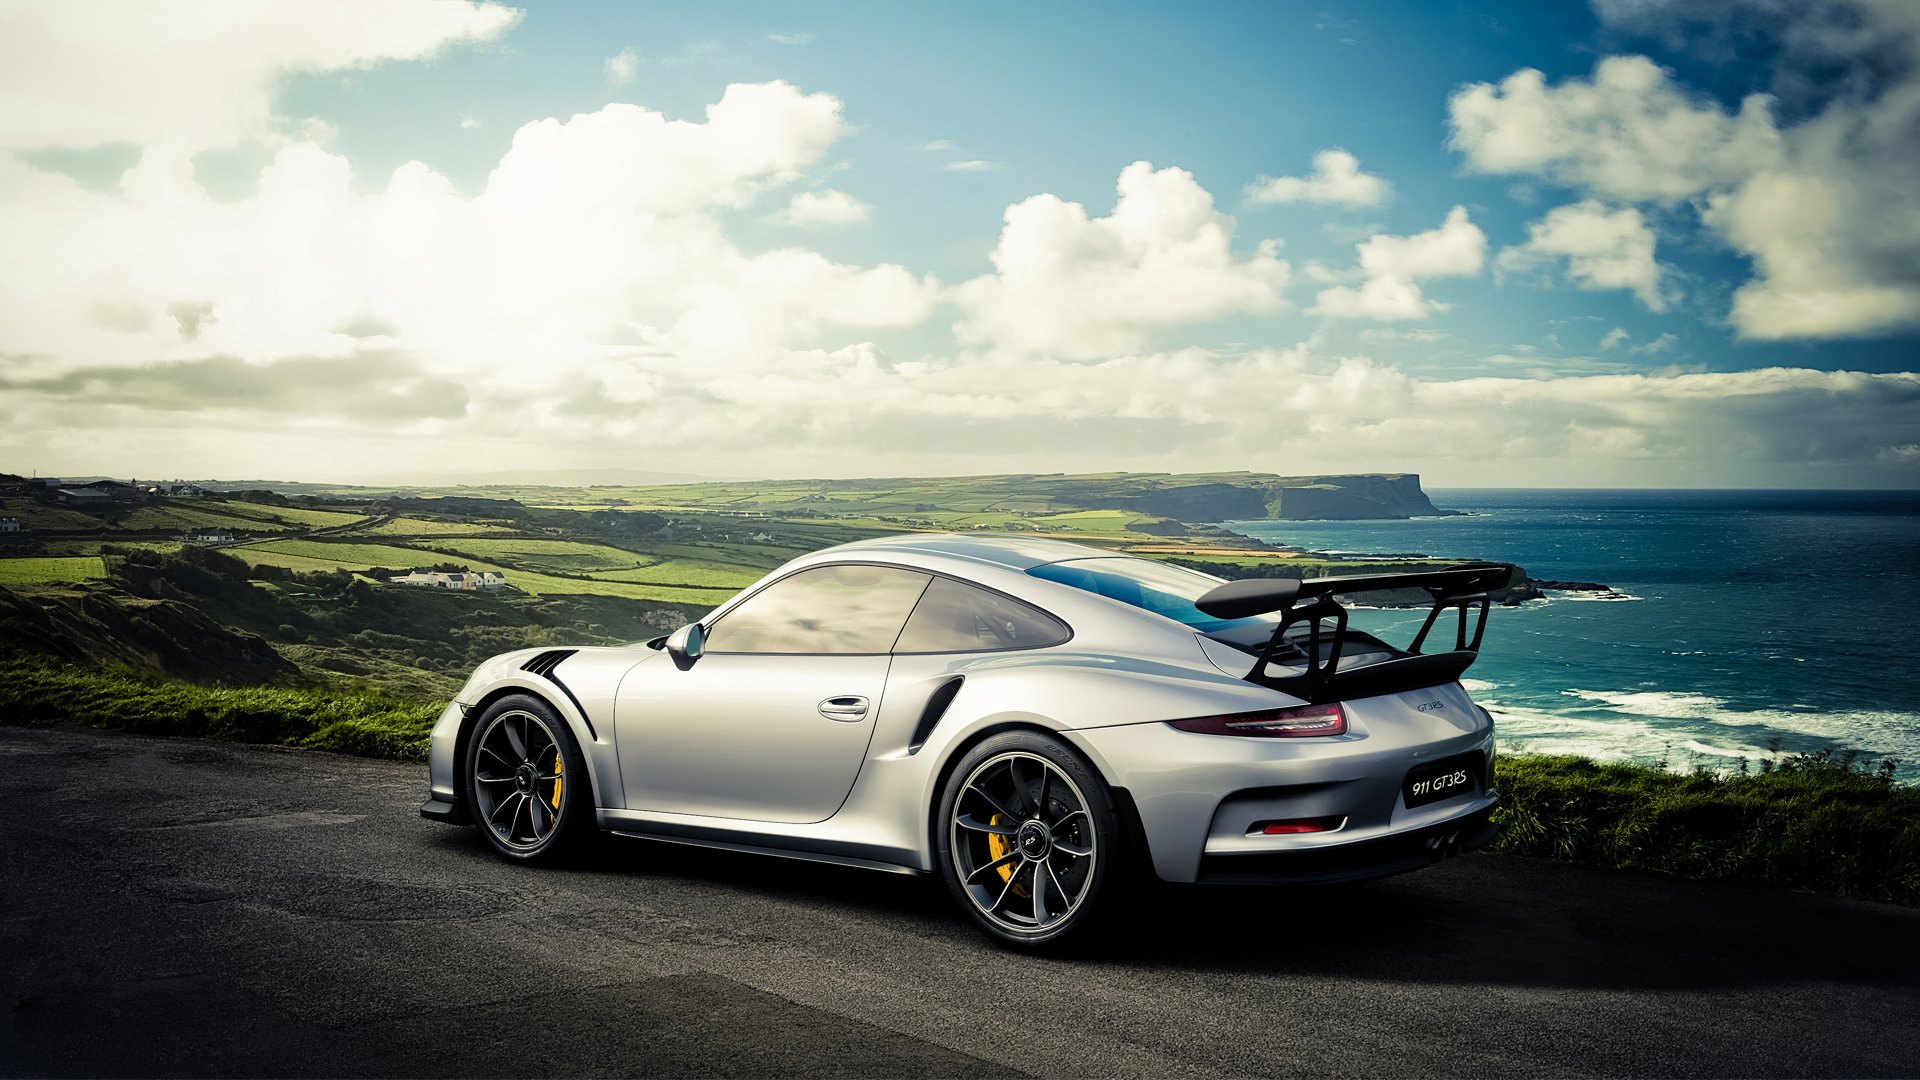 Porsche 911 Gt3 4k Ultra Hd Wallpaper Background Image 3840x2160 